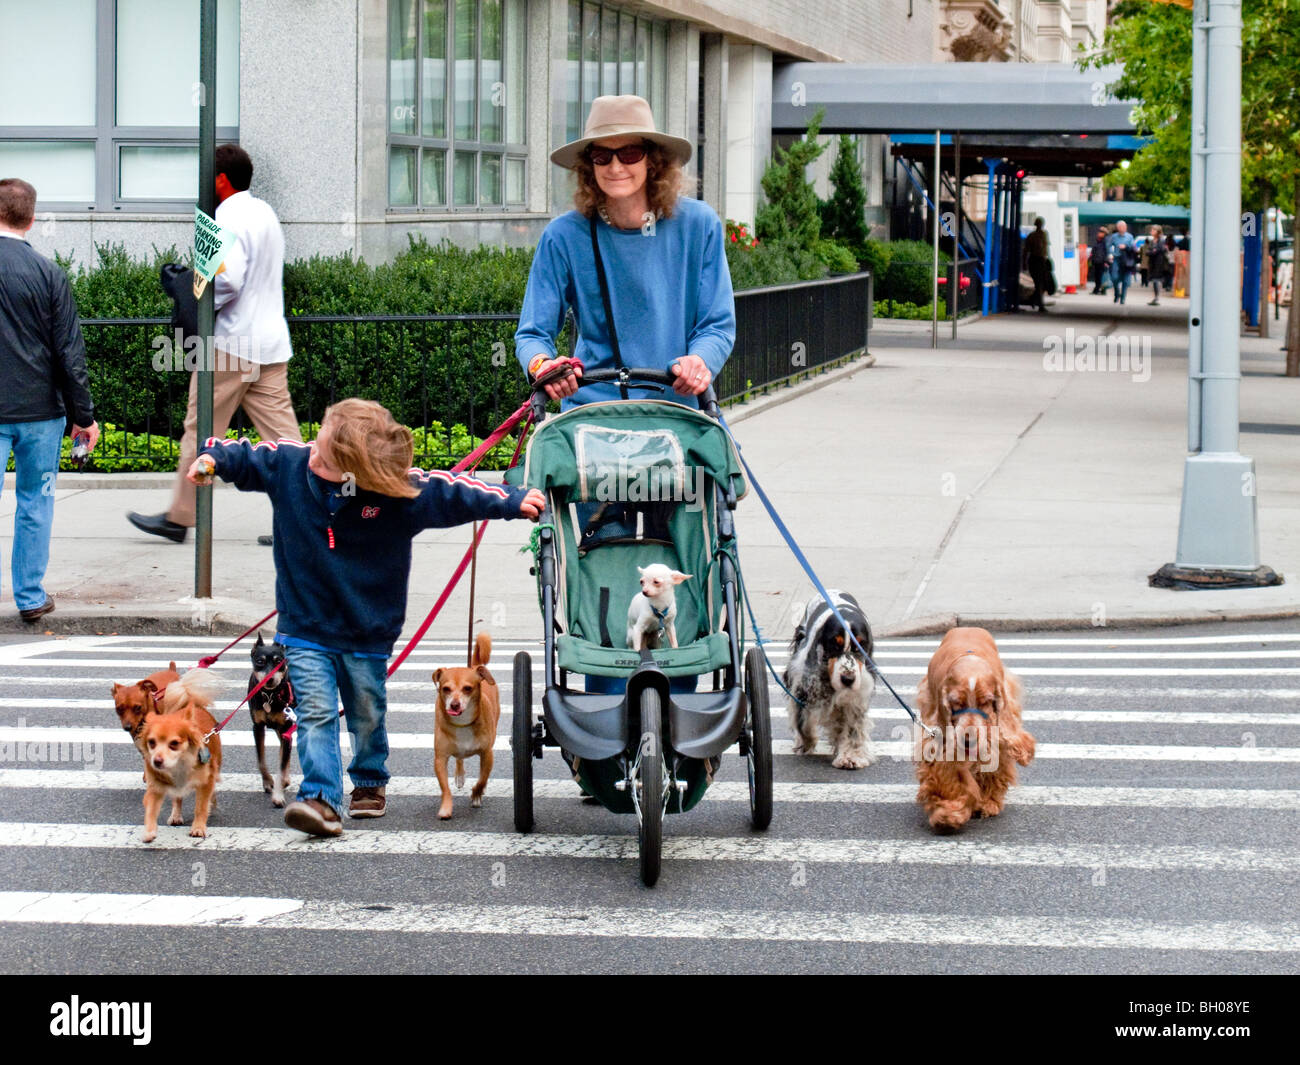 Eine professionelle Dogwalker übernimmt sieben Pooches wie sie Fifth Avenue in Manhattan, New York City kreuzt. Ein Hund hat ihr Sohn p Stockfoto